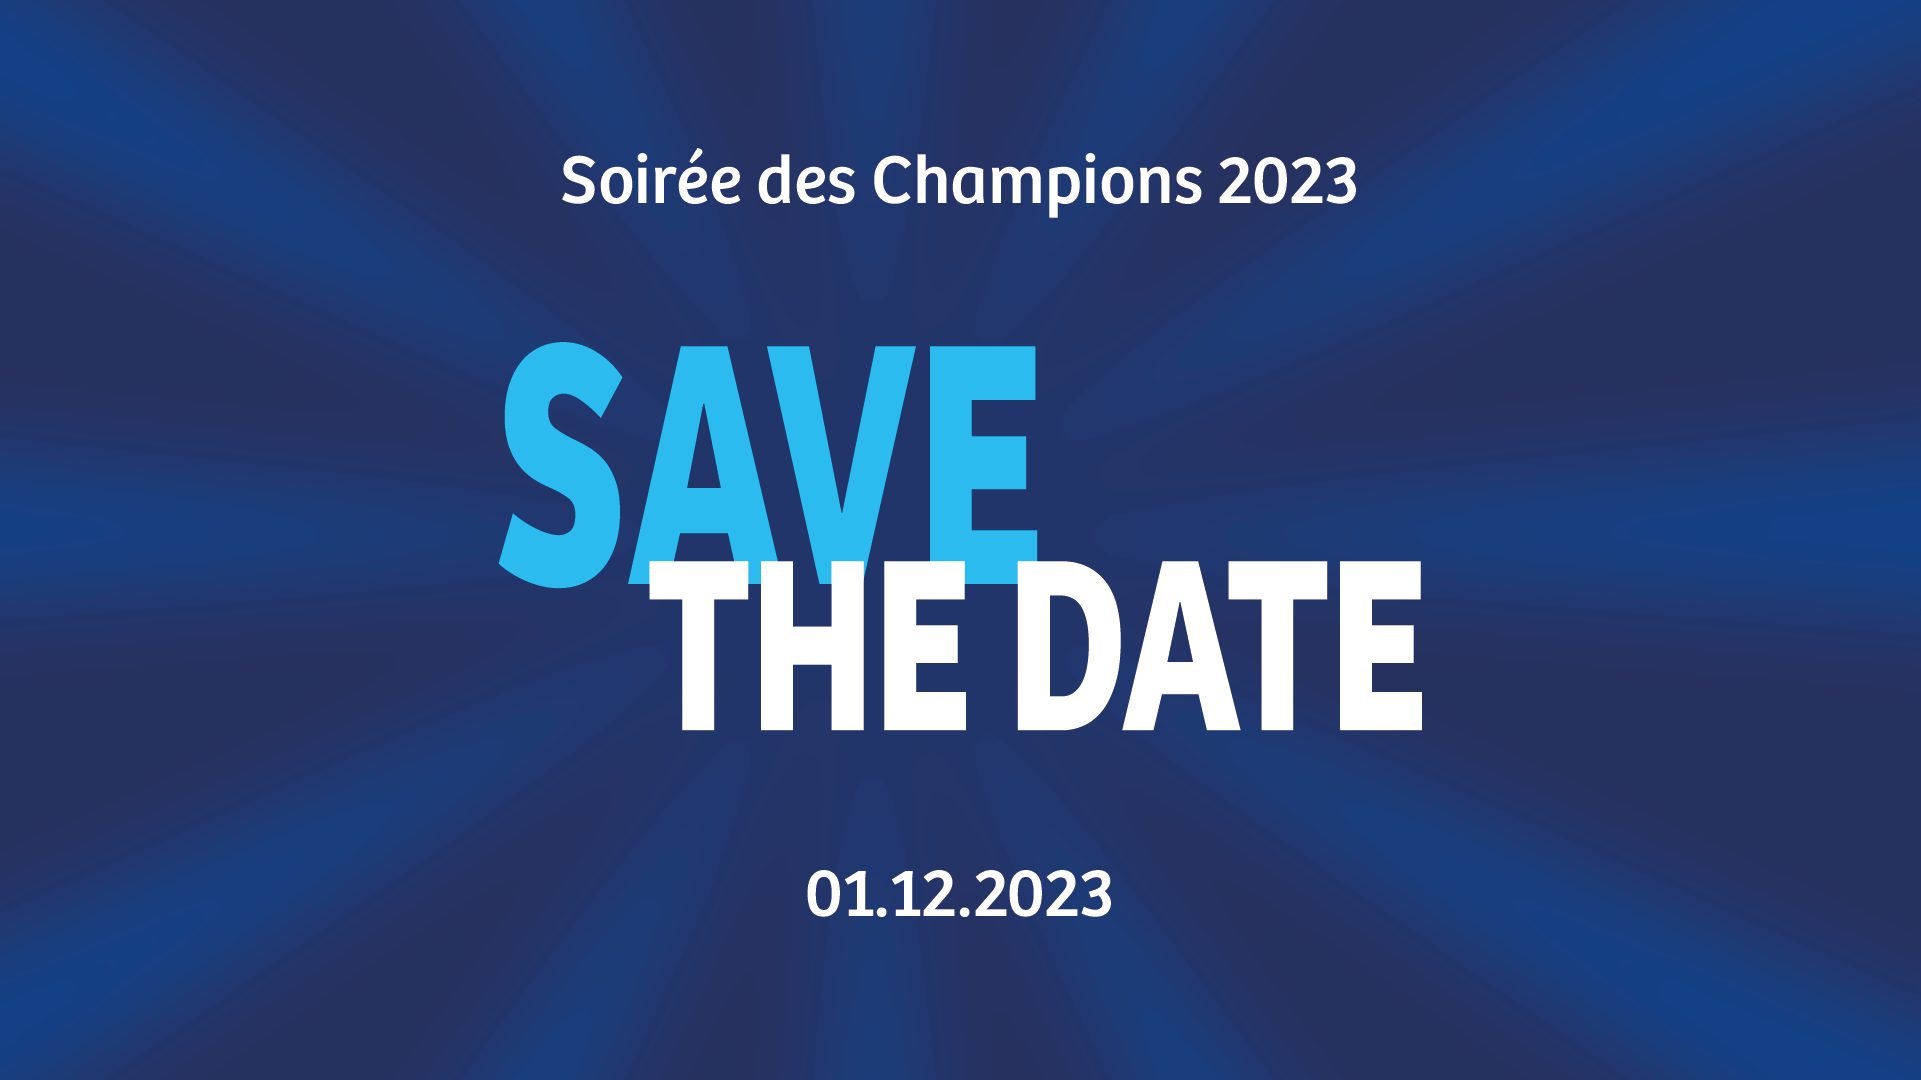 SAVE THE DATE – Soirée des Champions 2023